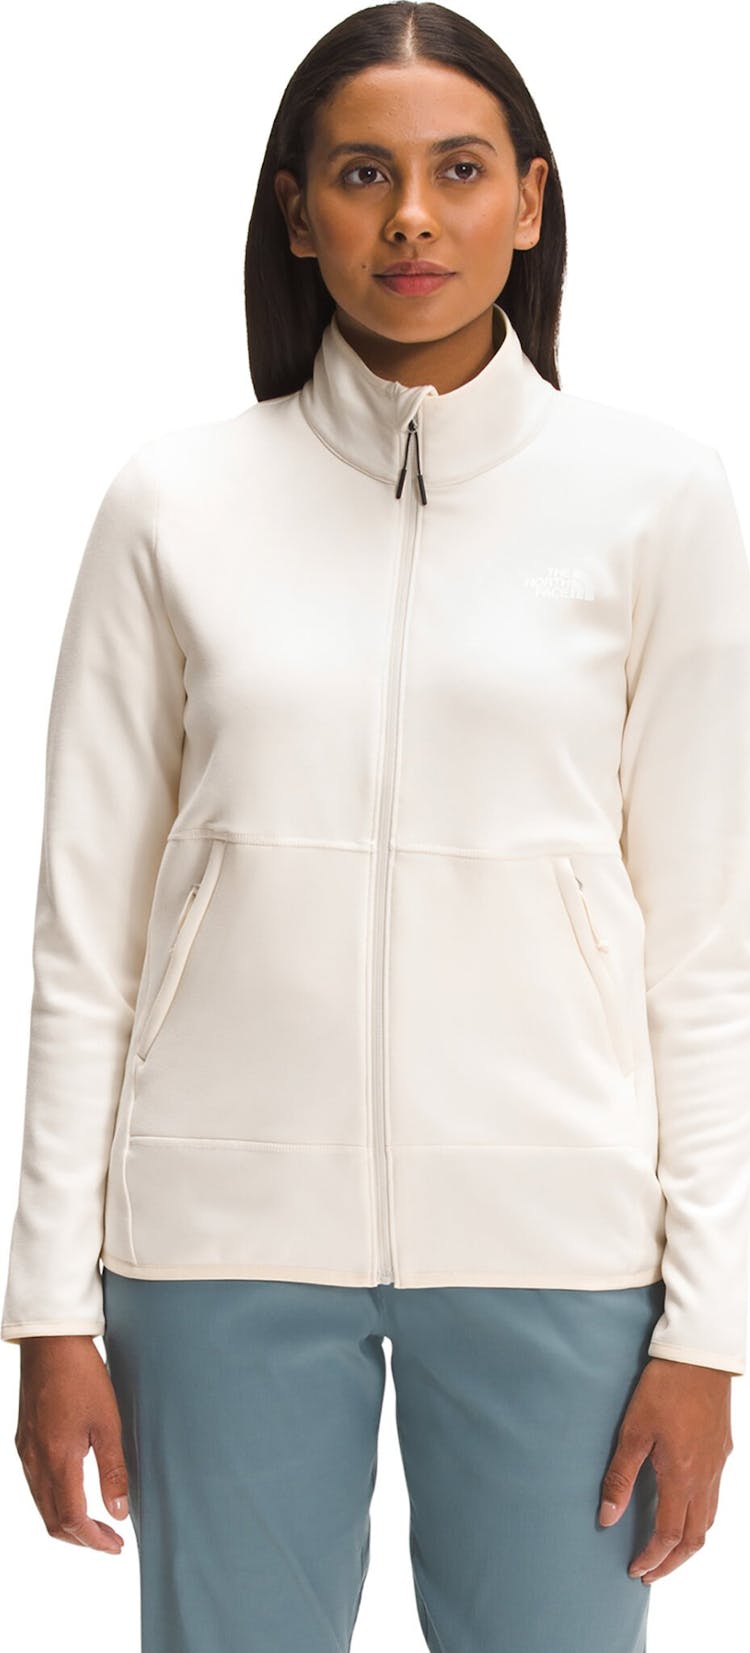 Product gallery image number 2 for product Canyonlands Full Zip Fleece Sweatshirt - Women's